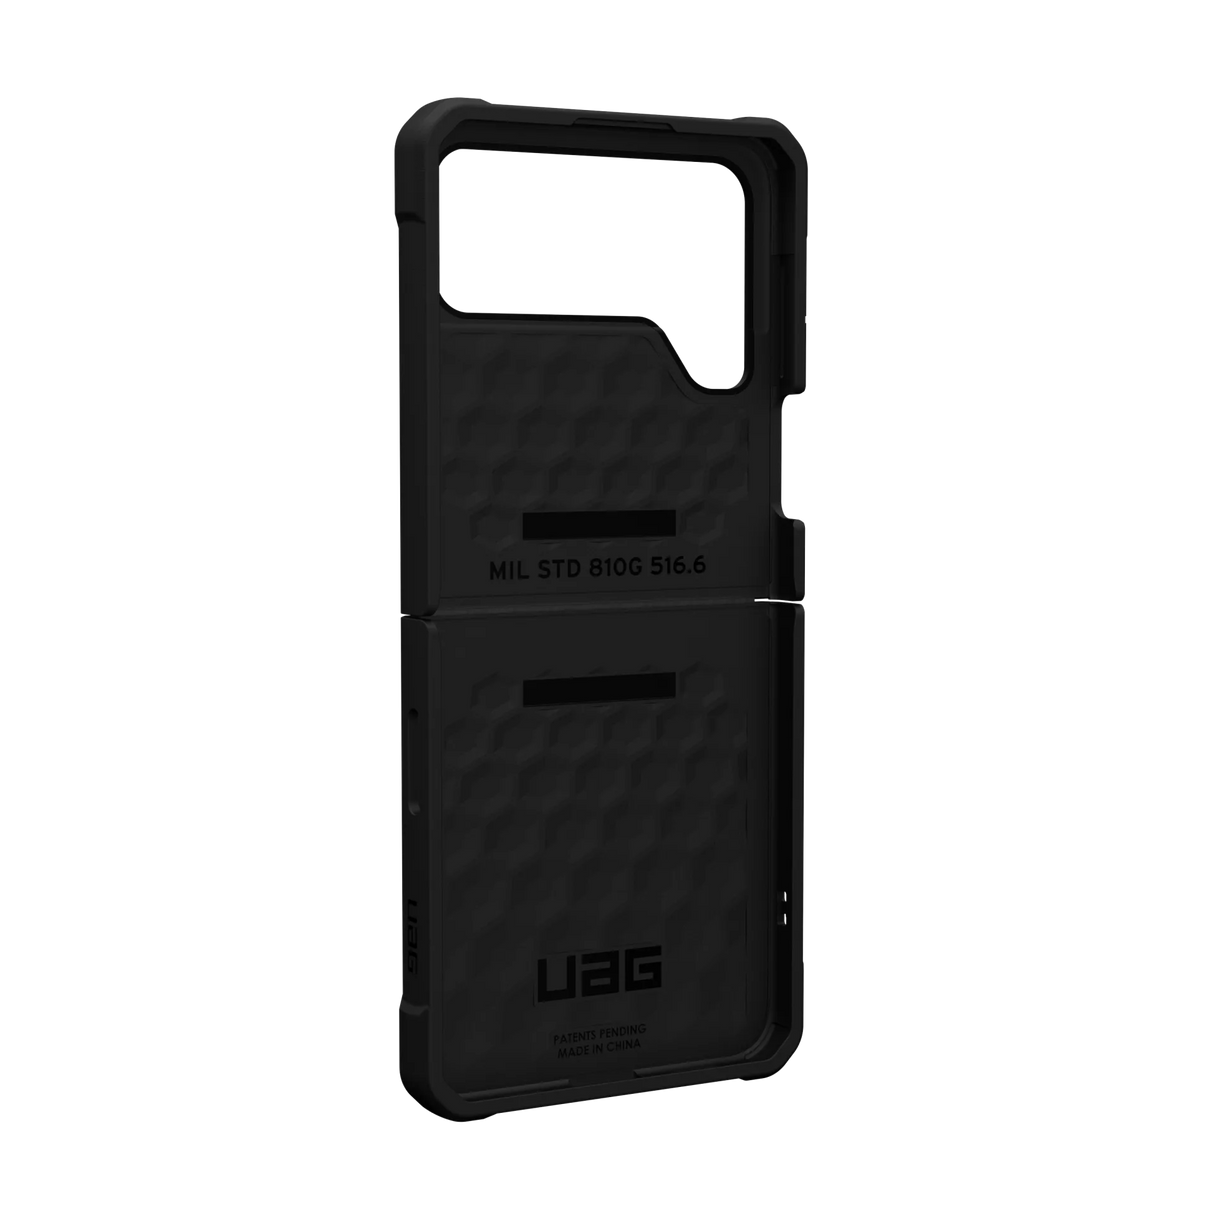 เคส UAG รุ่น Civilian - Galaxy Z Flip 4 - สี Olive